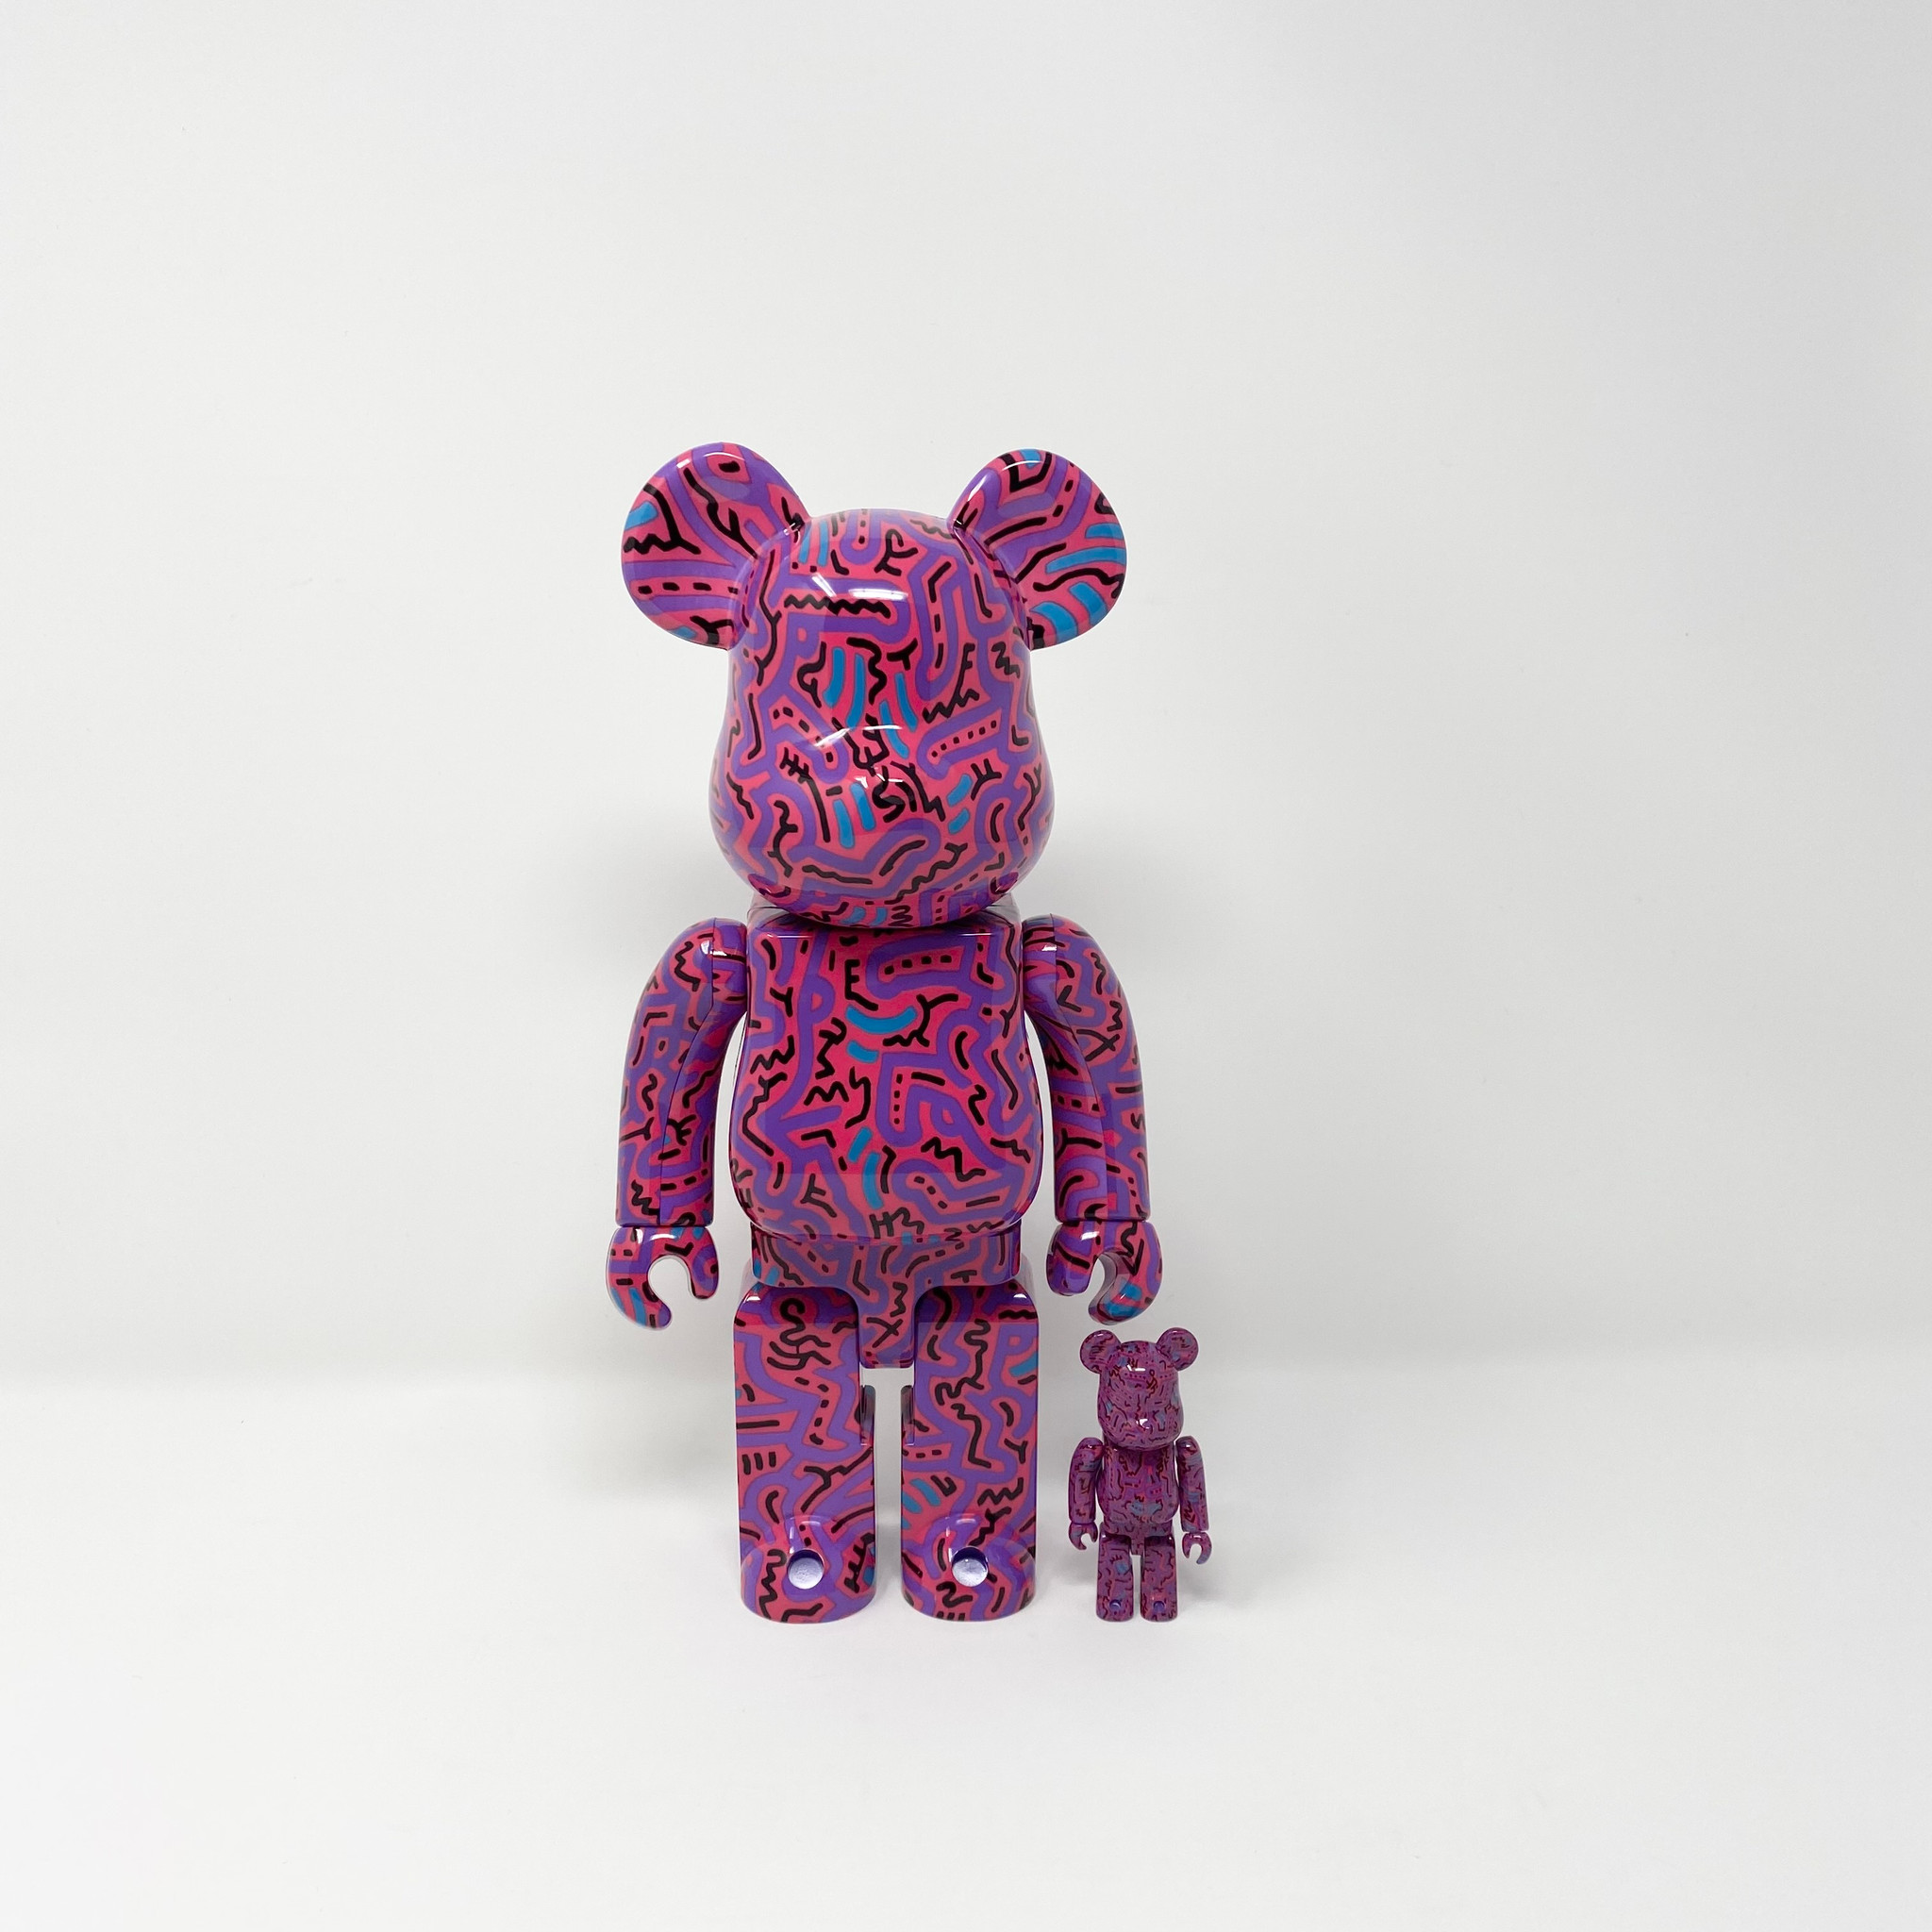 Bearbrick Keith Haring v2 (400%)